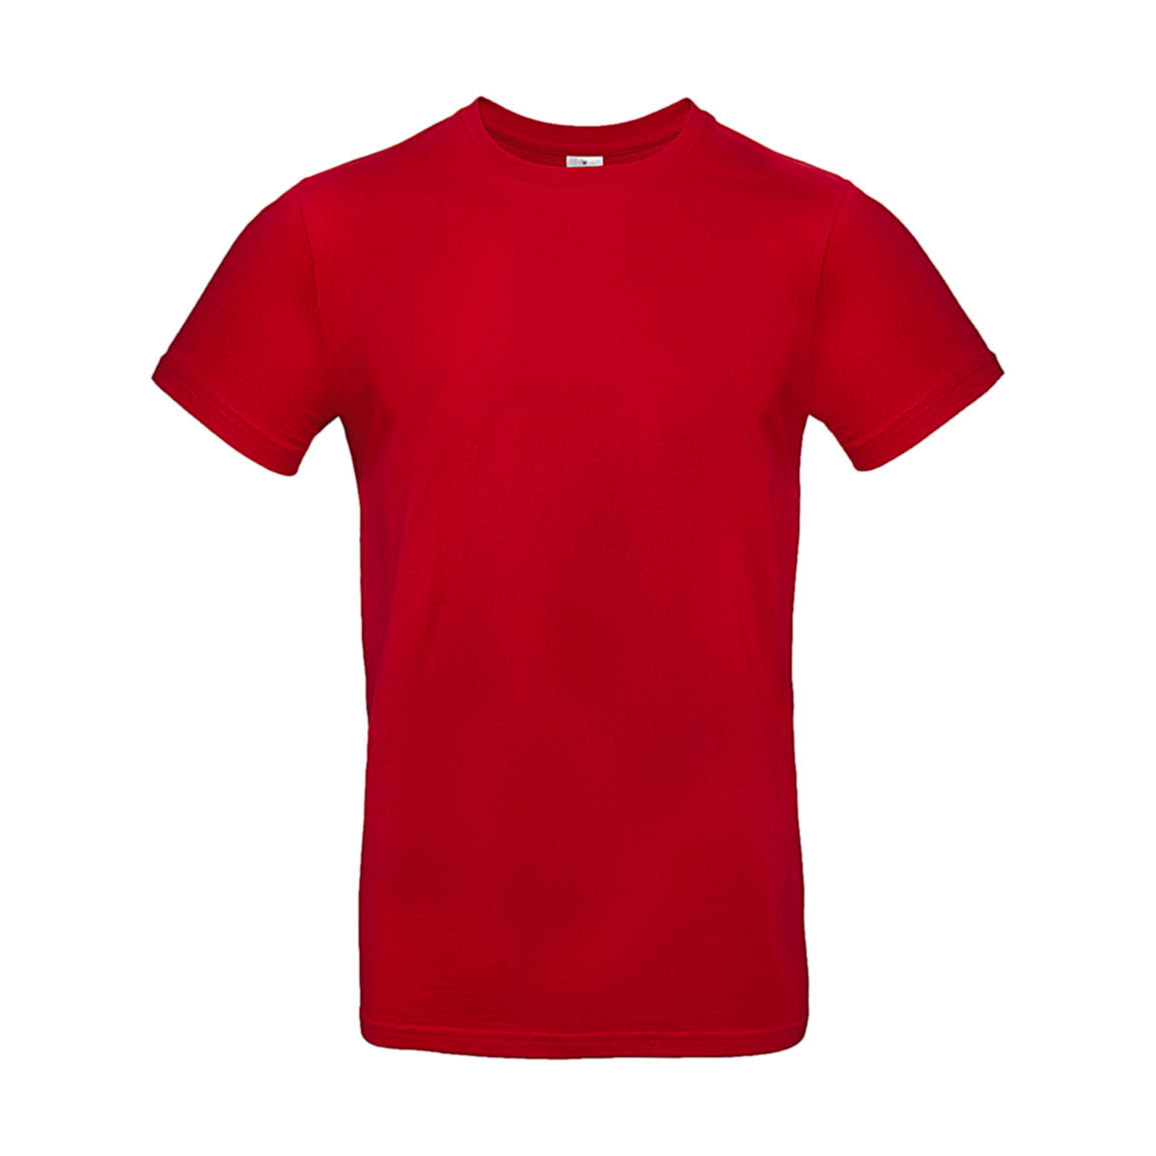 Triko pánské B&C E190 T-Shirt - červené, XL